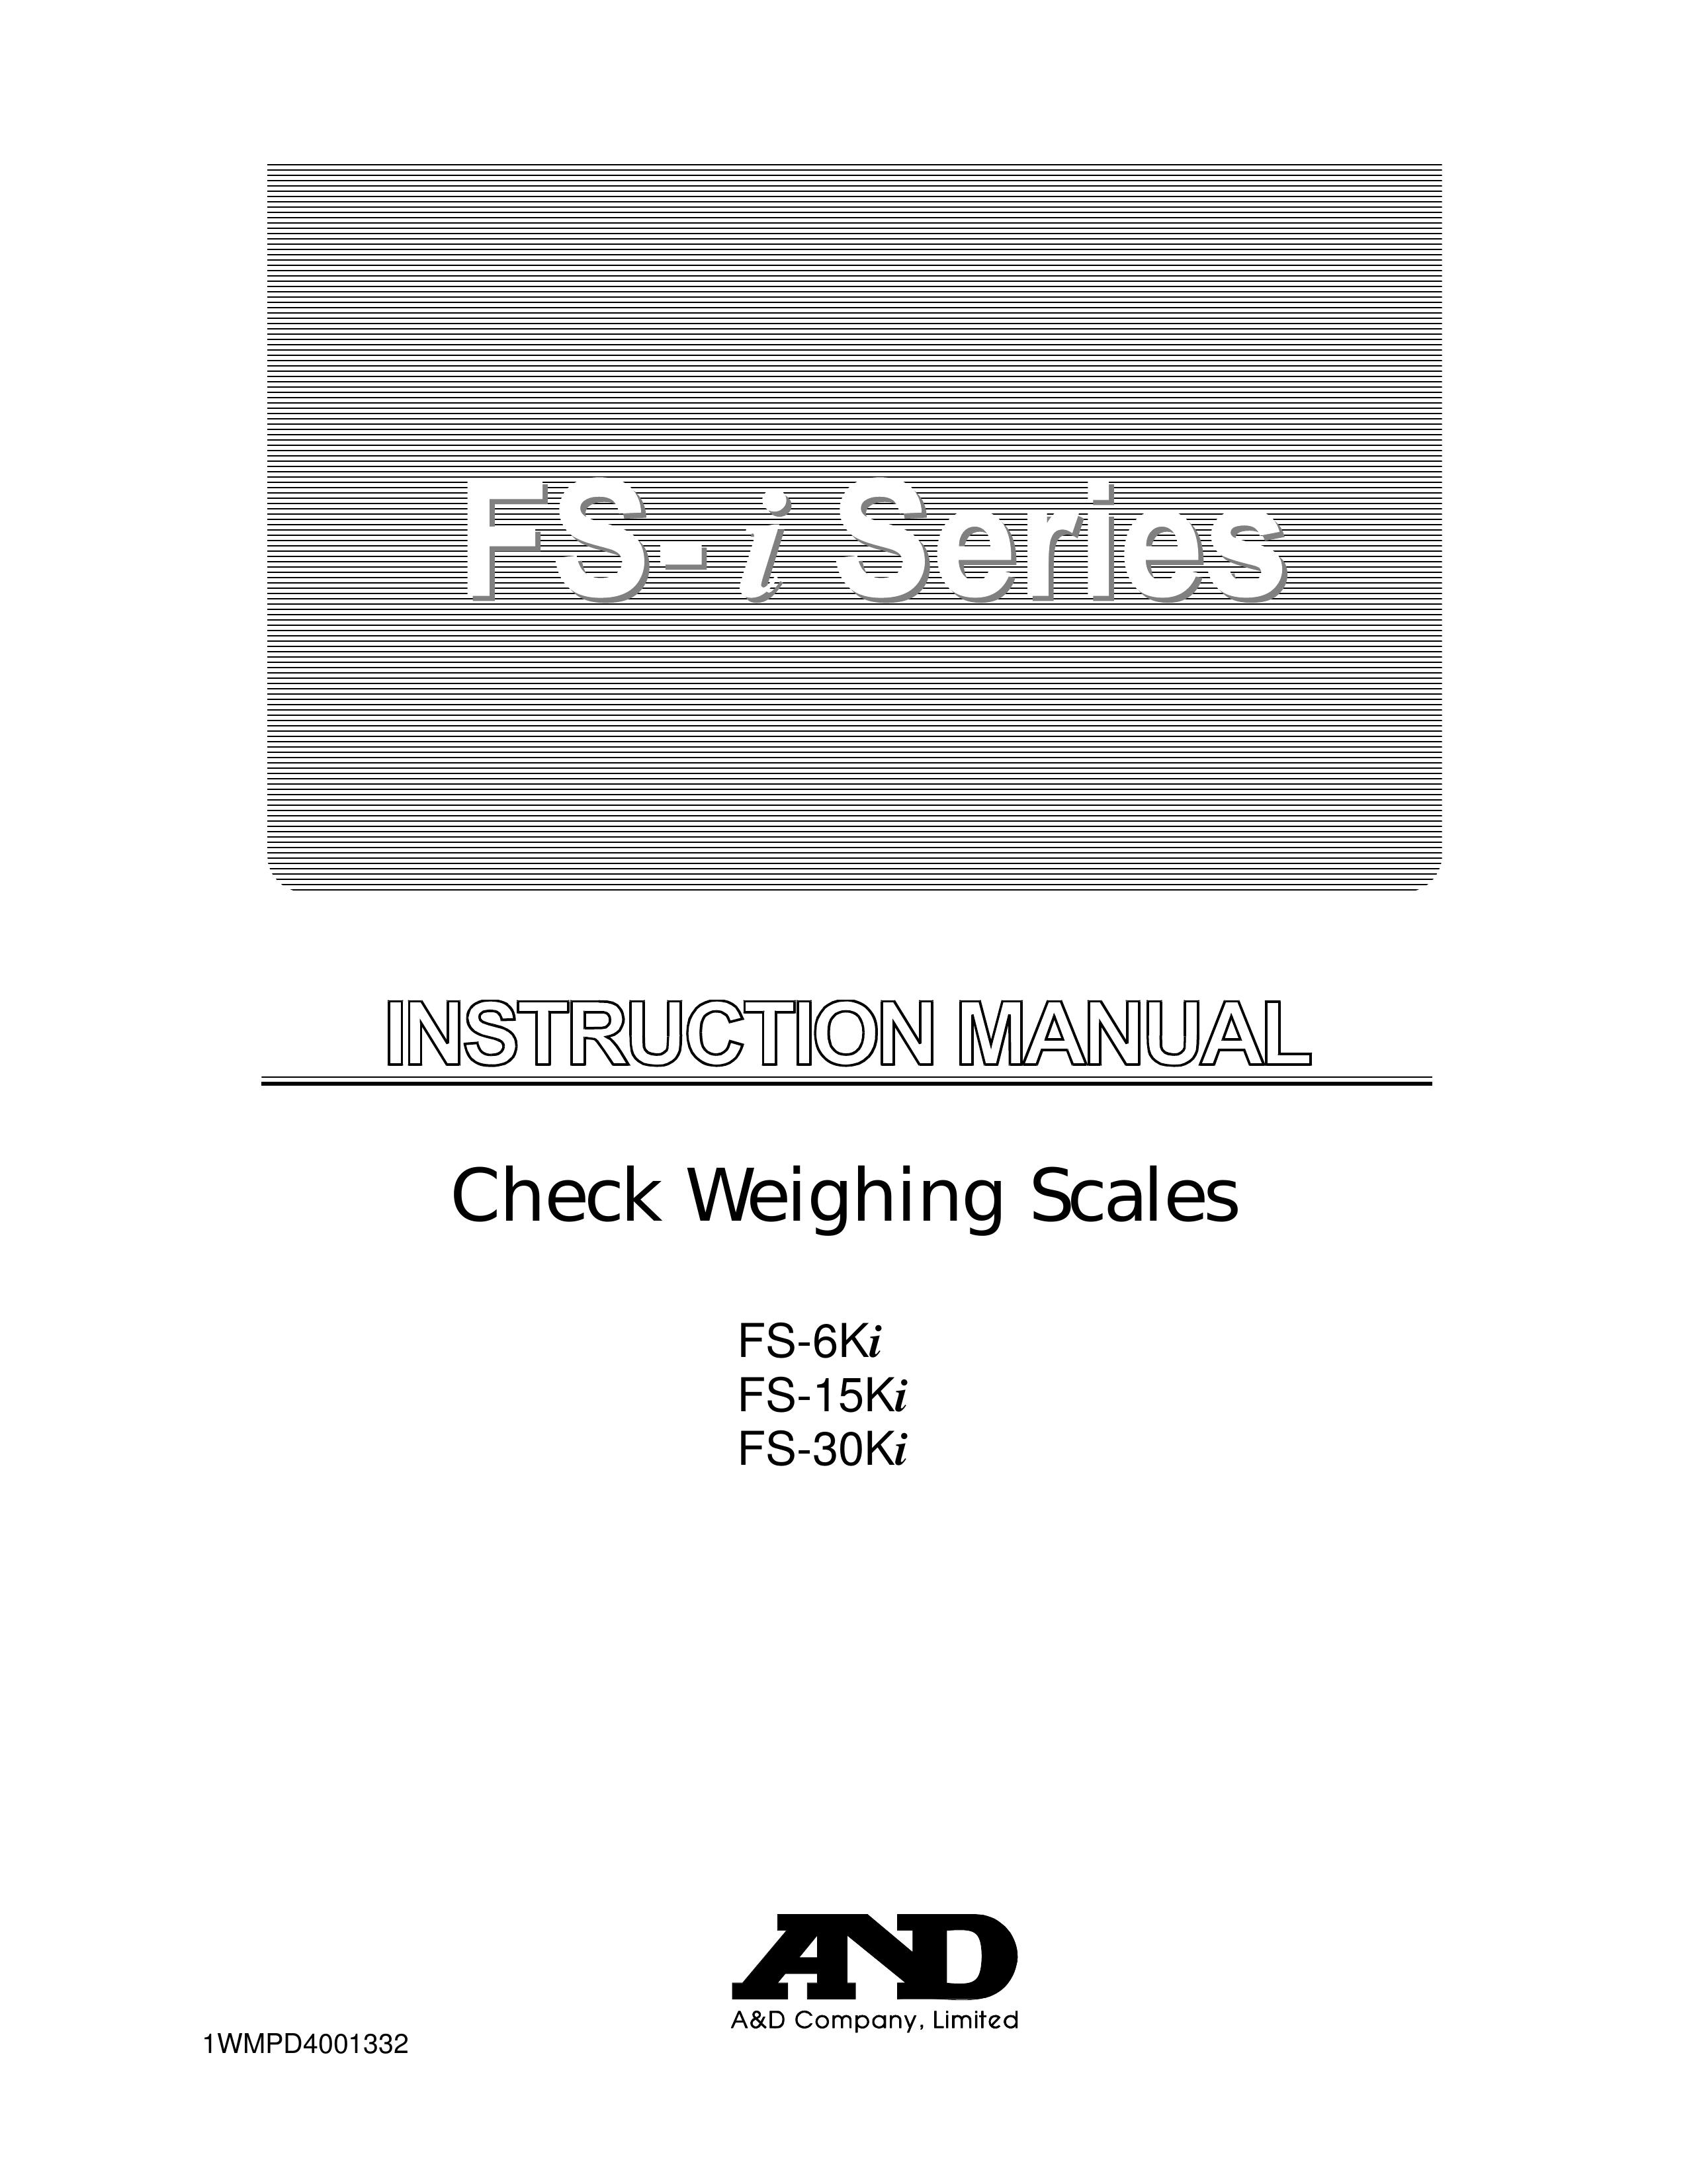 A&D FS-30Ki Scale User Manual